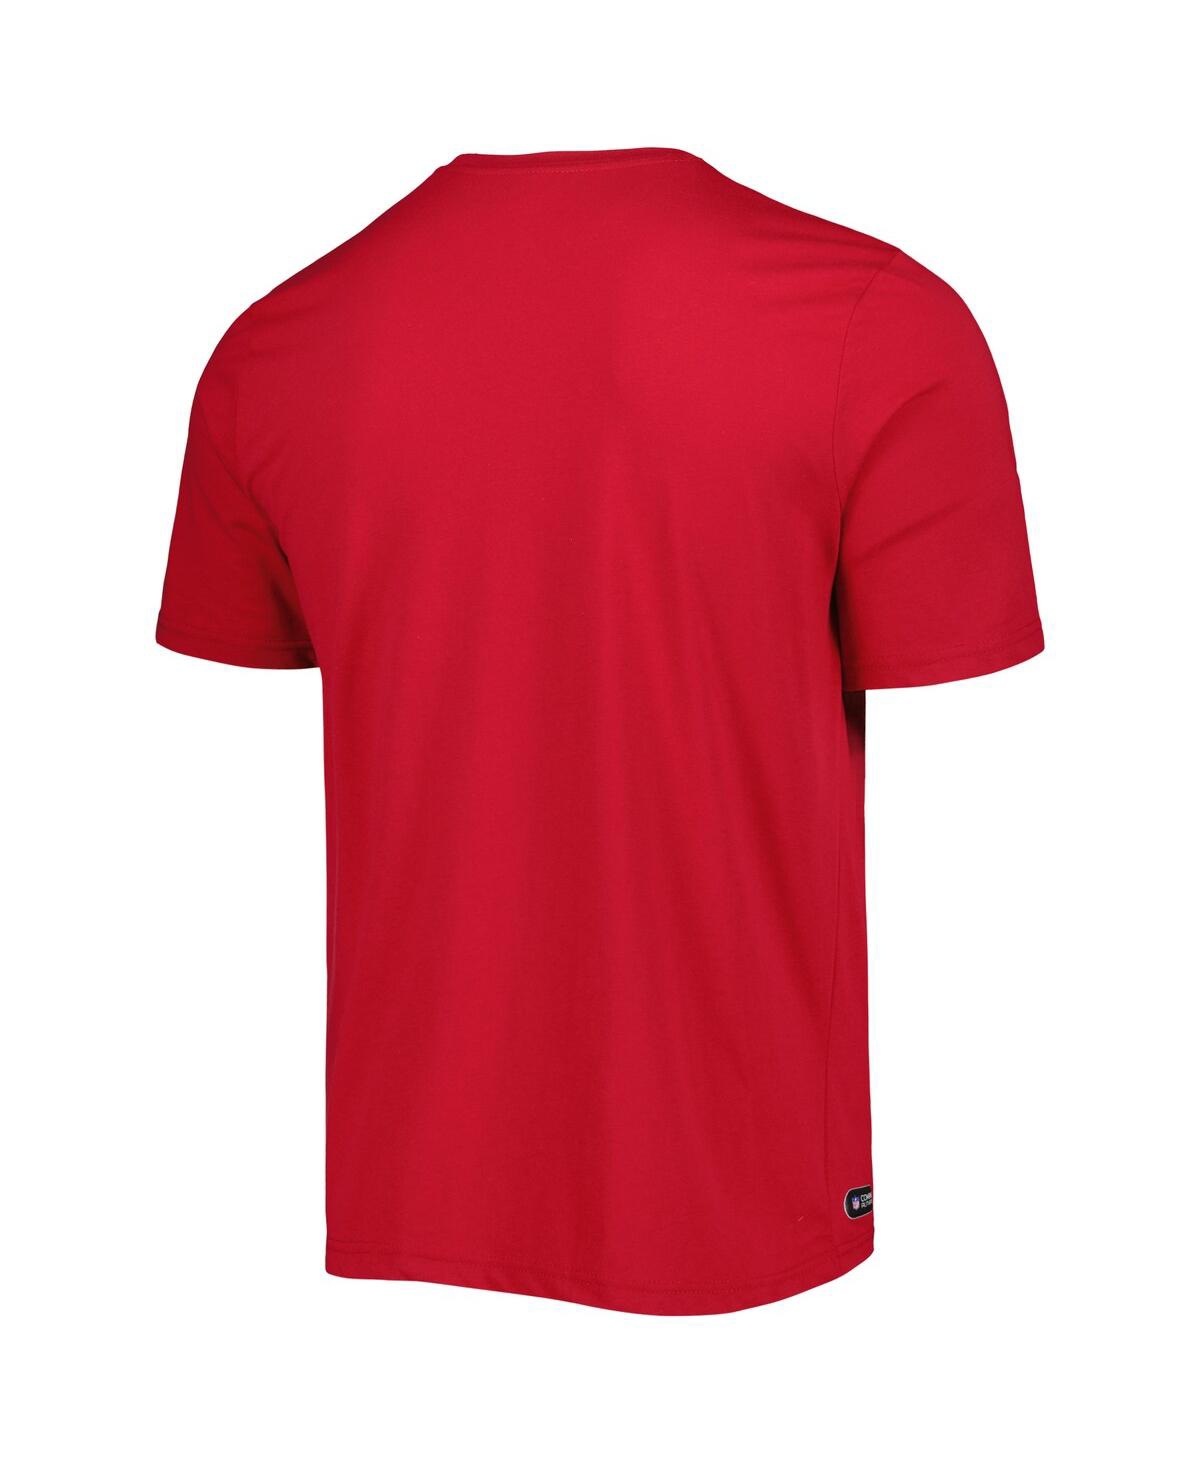 Shop New Era Men's  Cardinal Arizona Cardinals Combine Authentic Training Huddle Up T-shirt